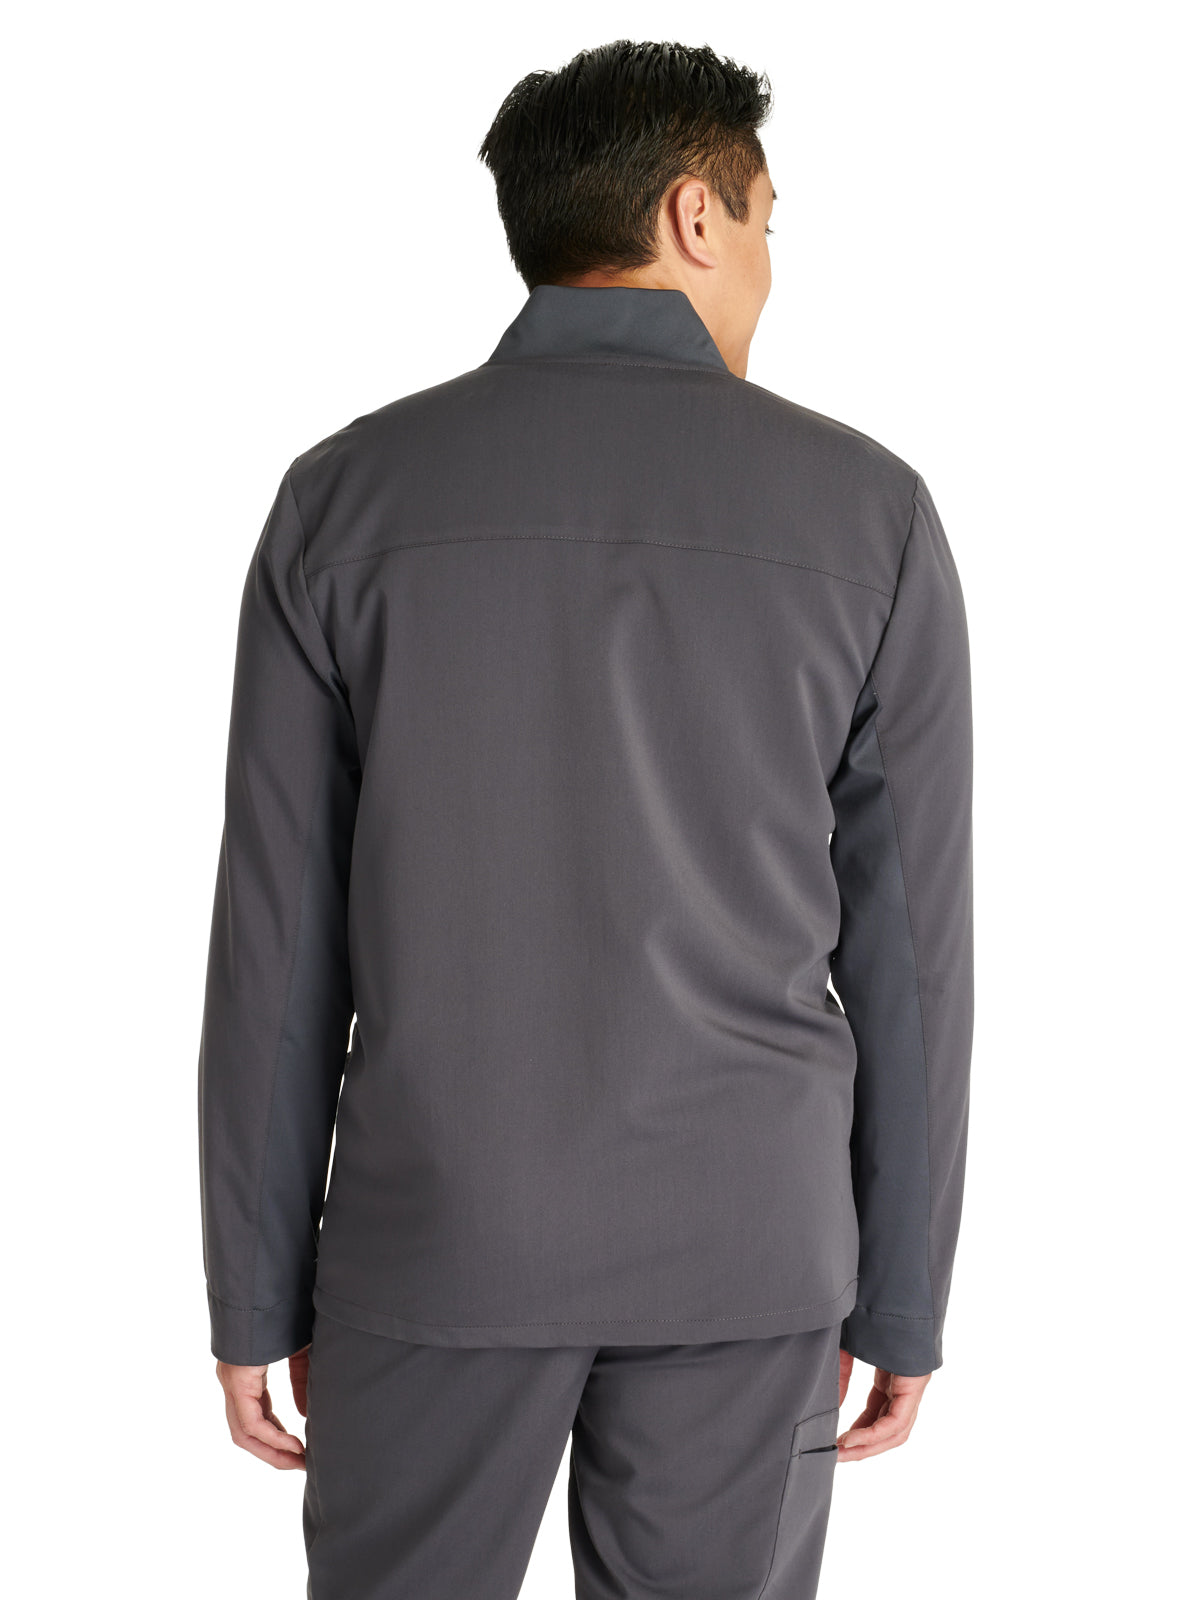 Men's Zip Front Scrub Jacket